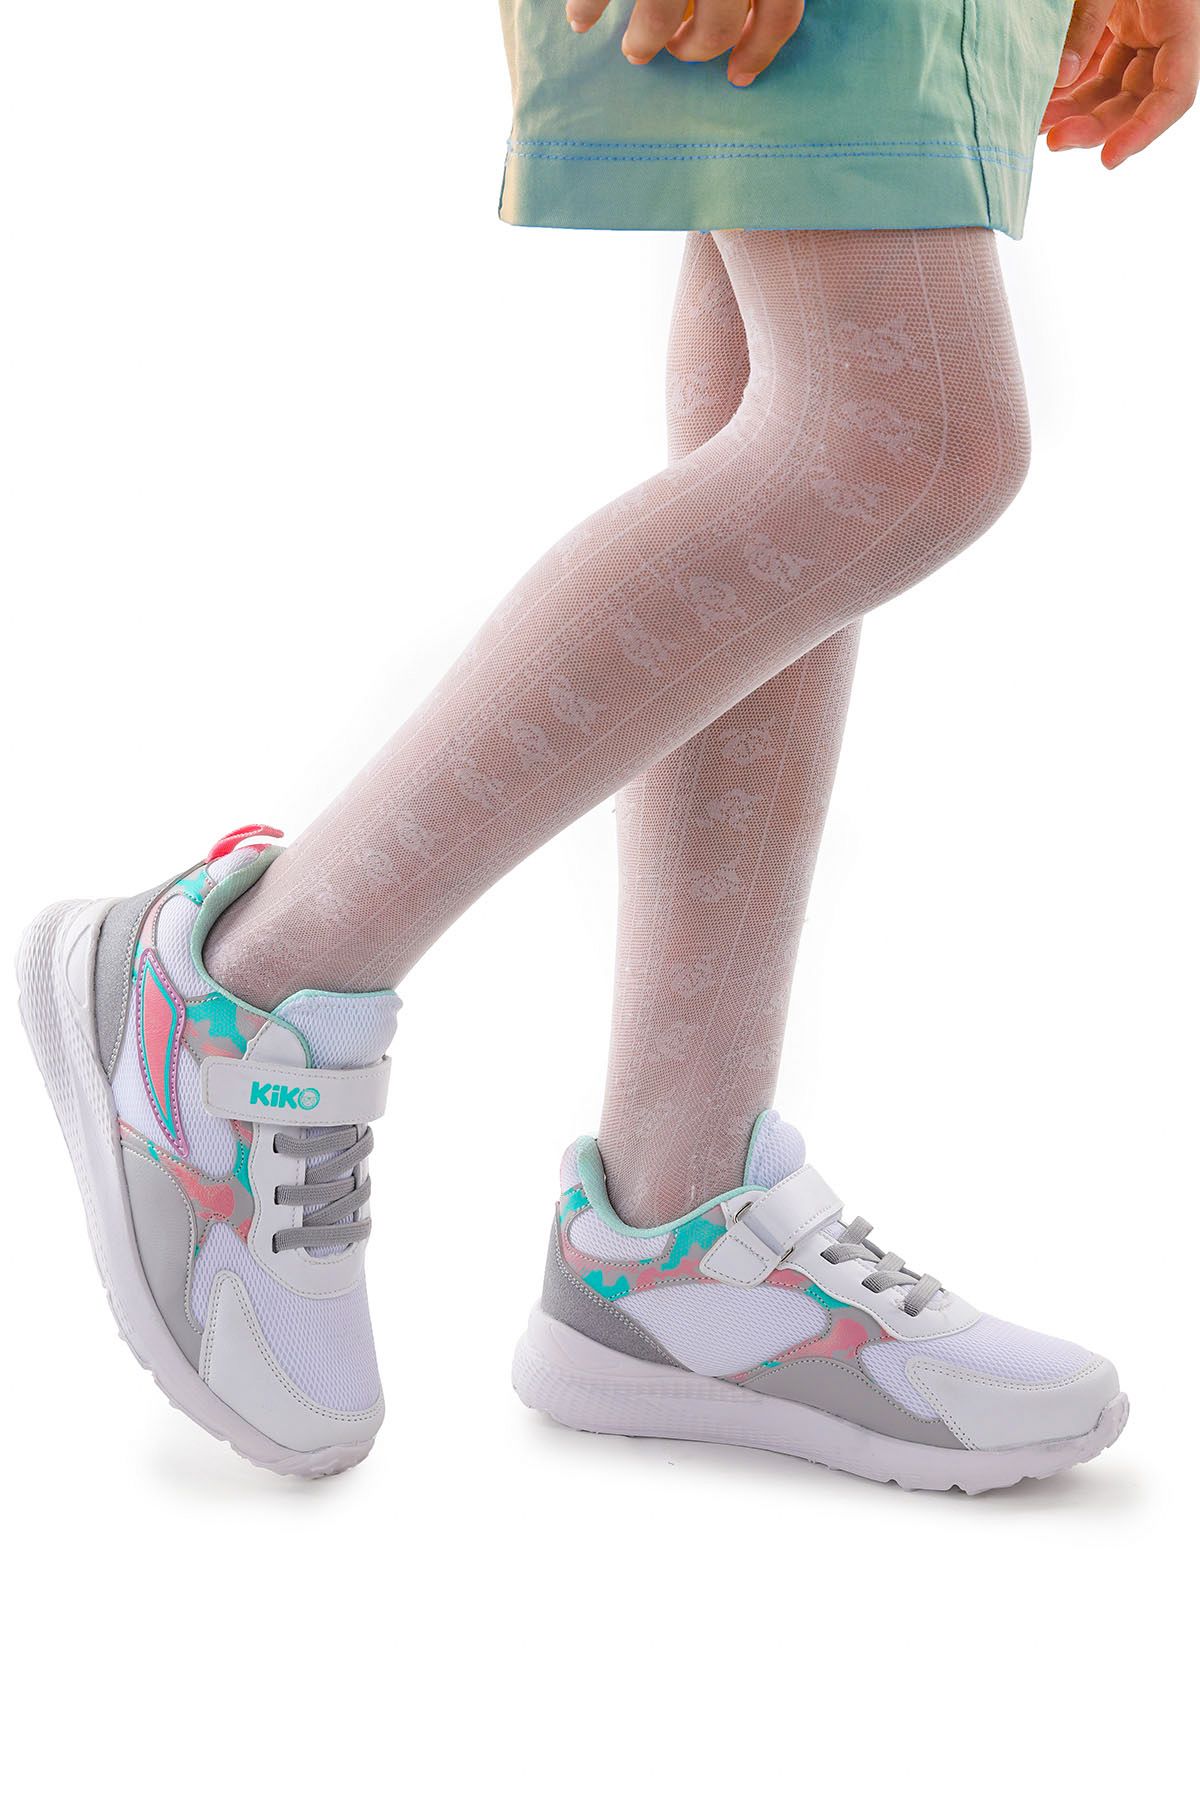 Kiko Kids Cırtlı Fileli Kız Çocuk Spor Ayakkabı 3004